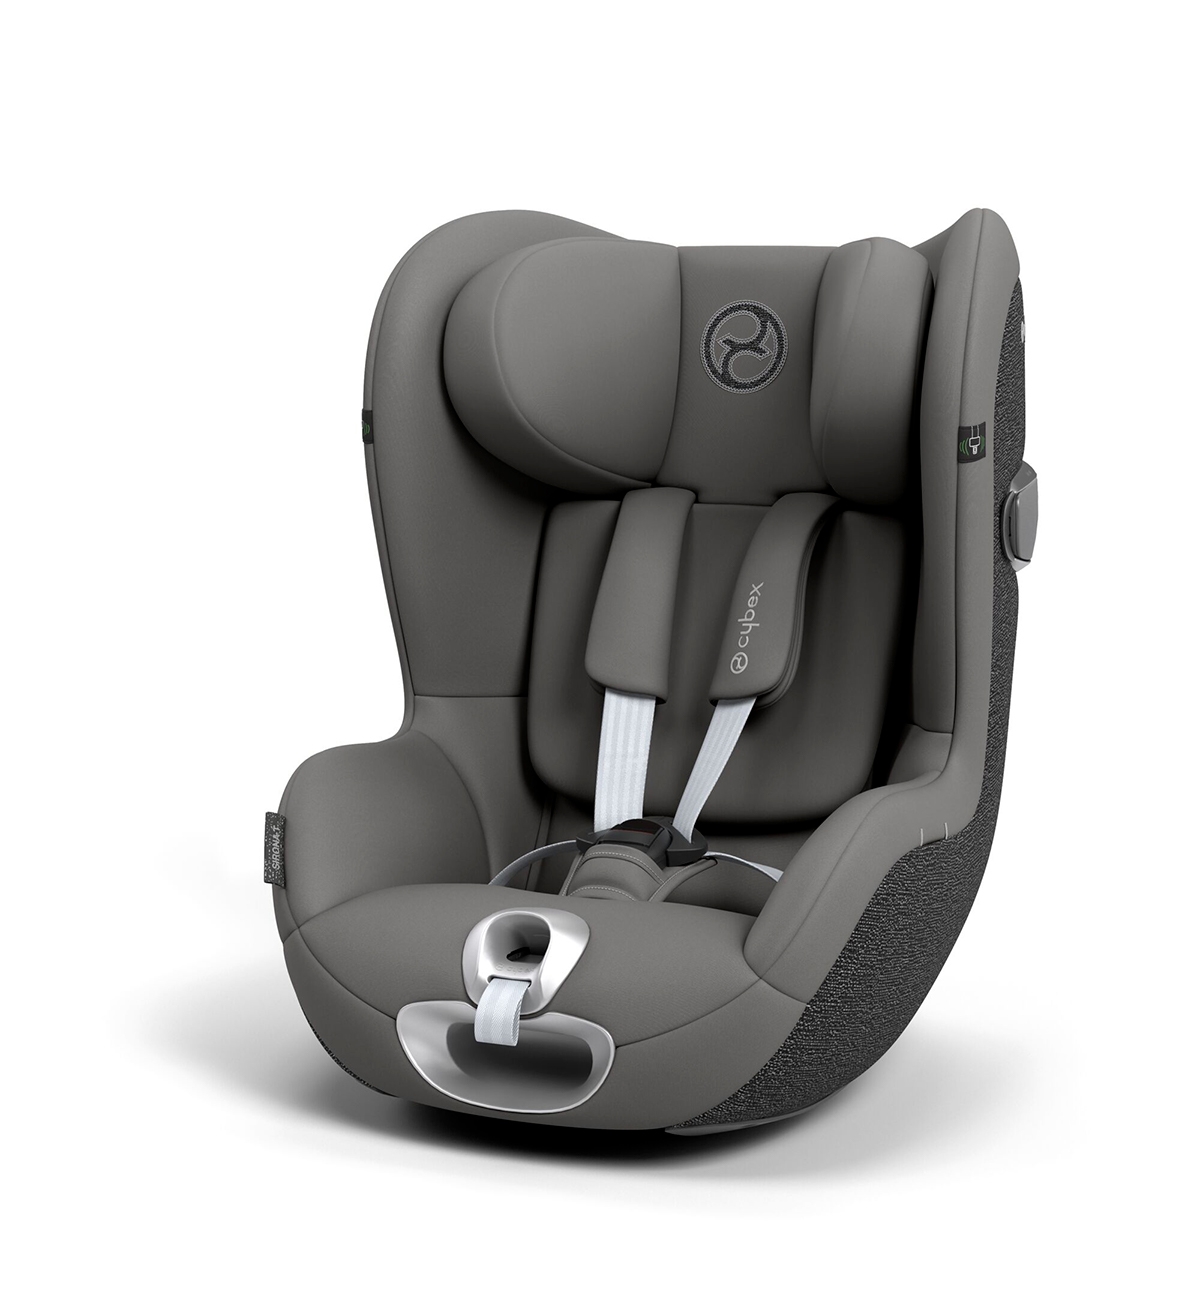 Seggiolino Auto Cybex Sirona T i-Size Comfort - Prezzo: 349,95€ - Codice  articolo: 523000381 - Seggiolini Auto Negozio Online